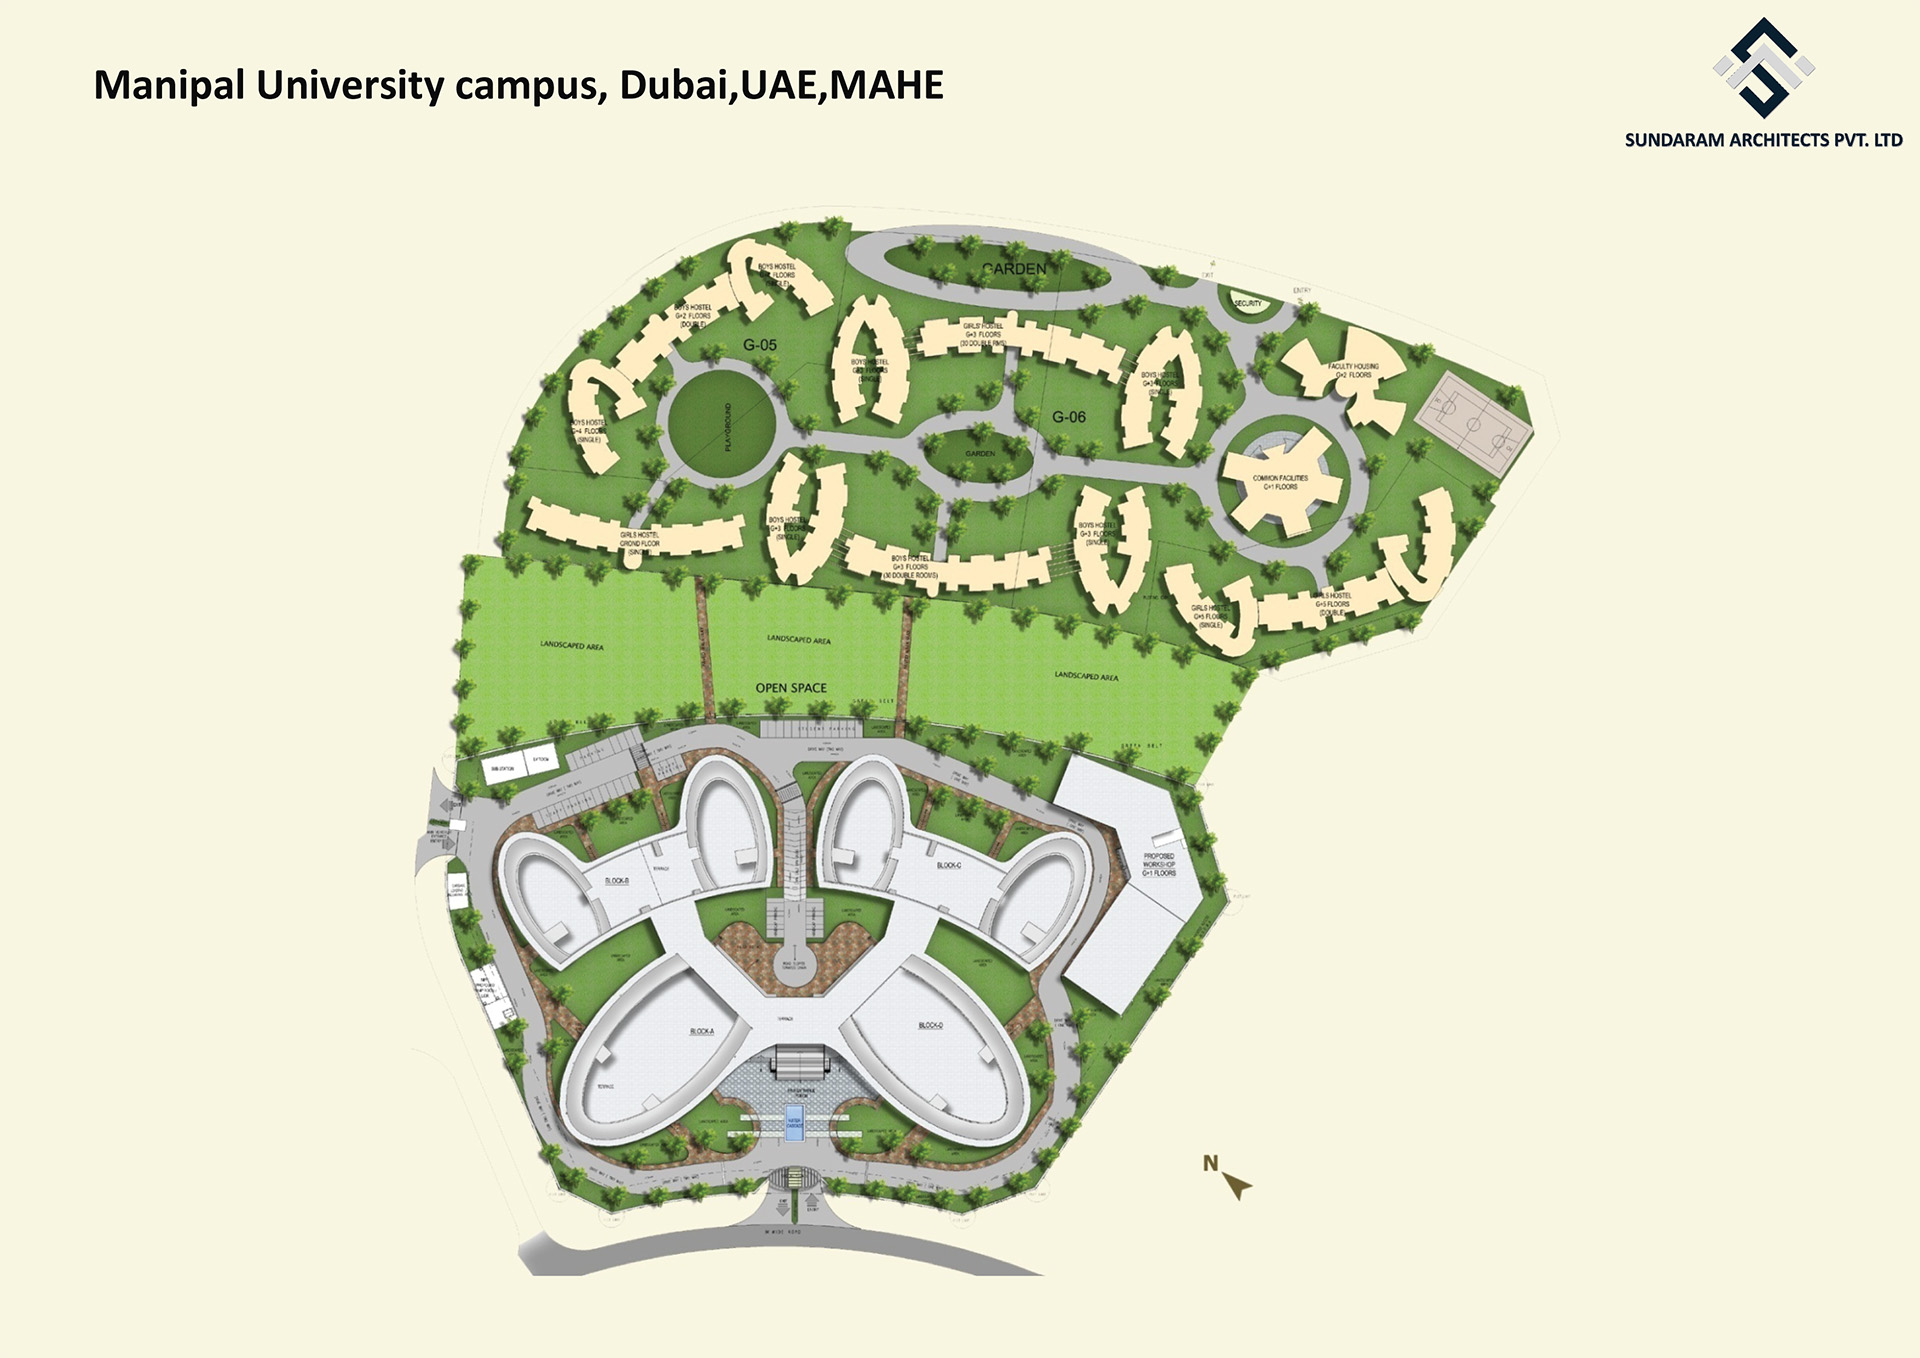 Sundaram Architects designed Manipal University Campus - Dubai, UAE, MAHE